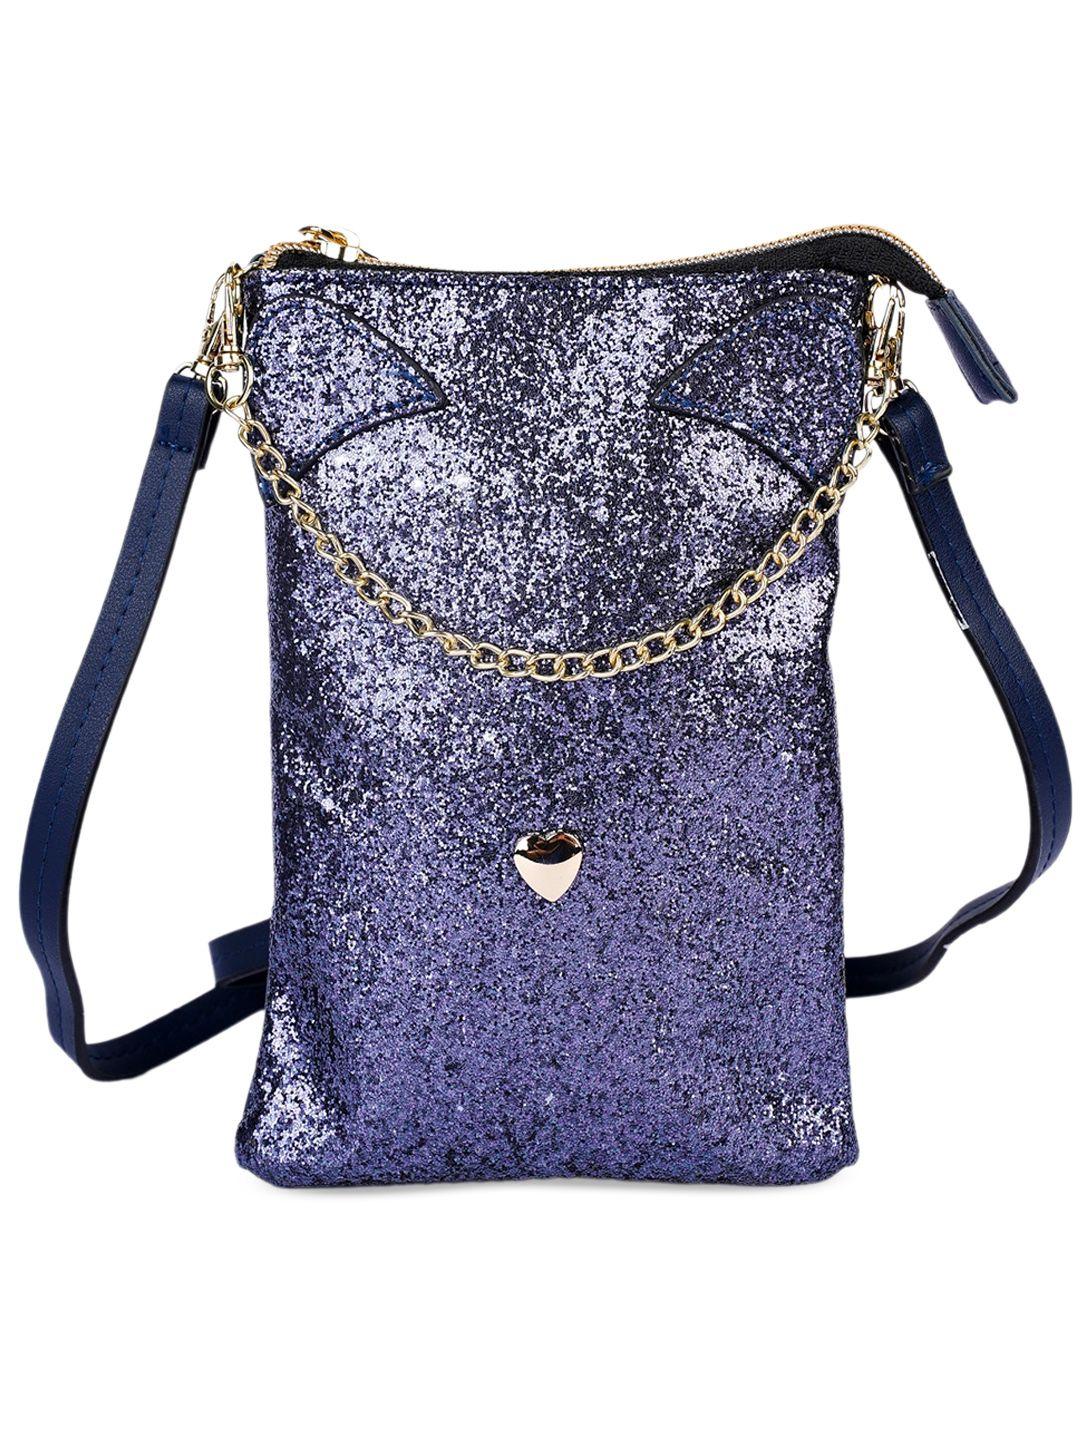 instabuyz embellished shopper sling bag